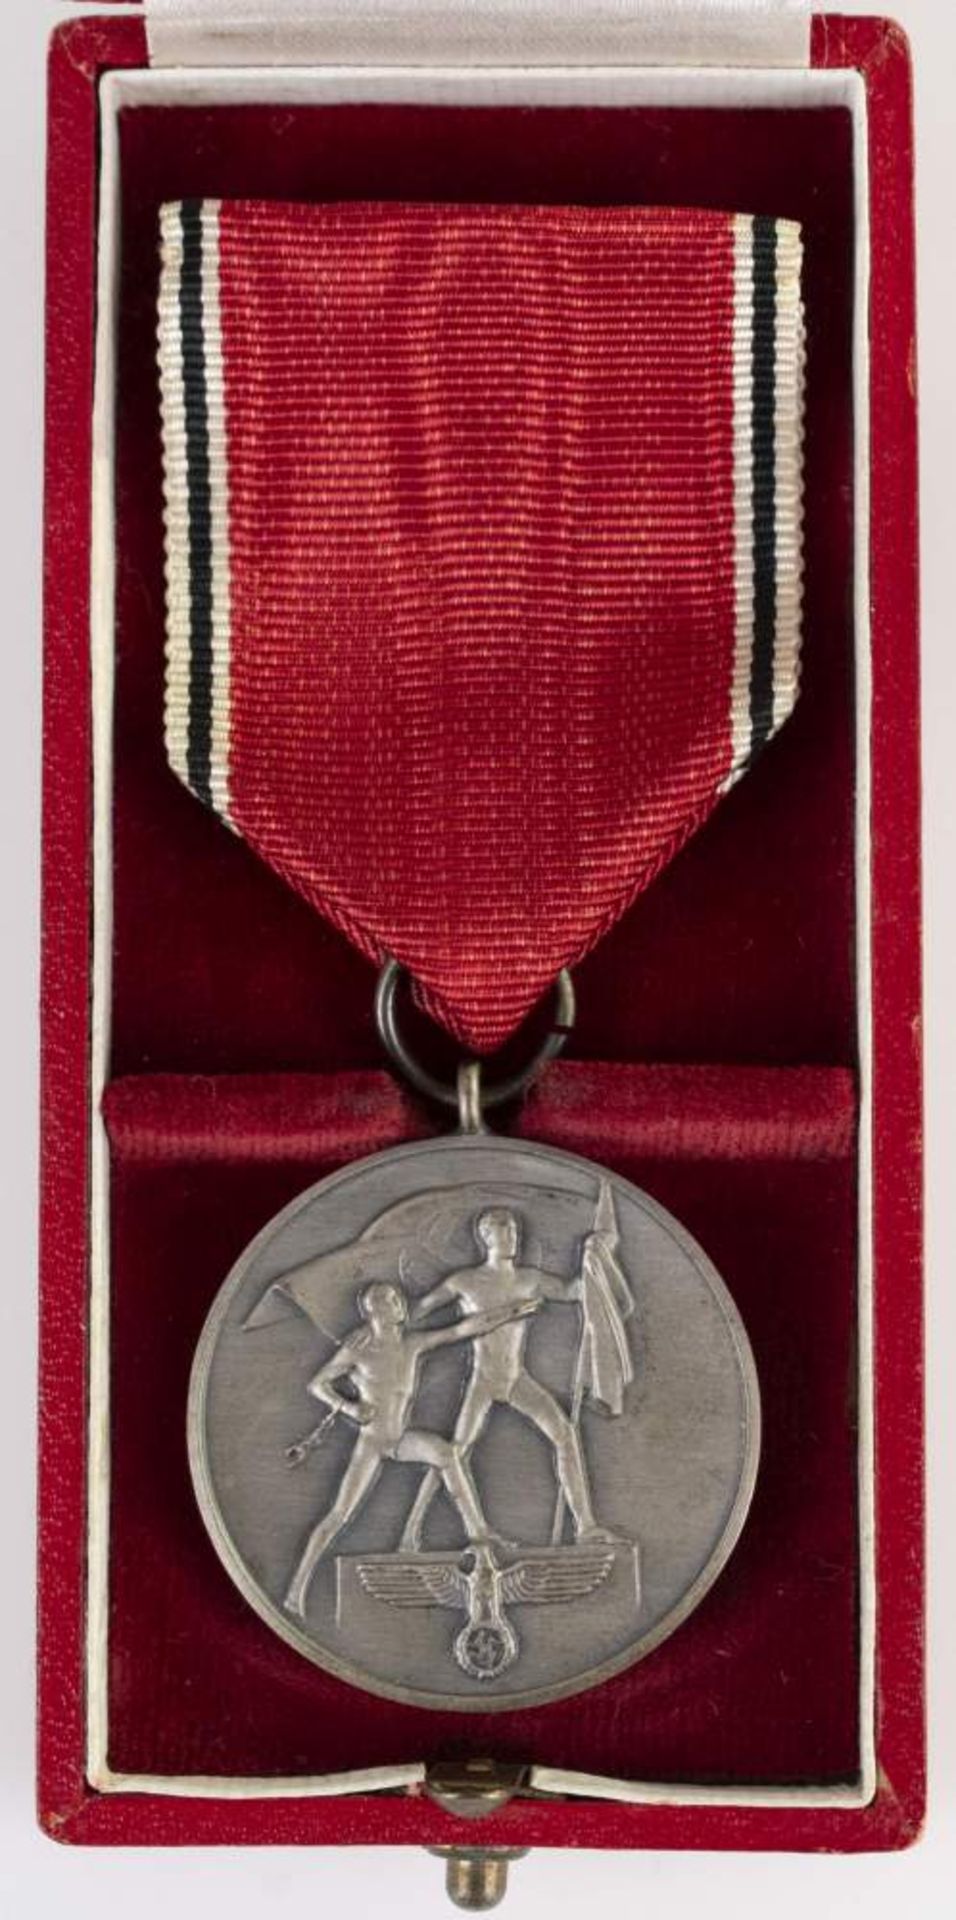 Anschlussmedaille Österreich, Medaille zur Erinnerung an den 13. März 1938, OEK 3516, am